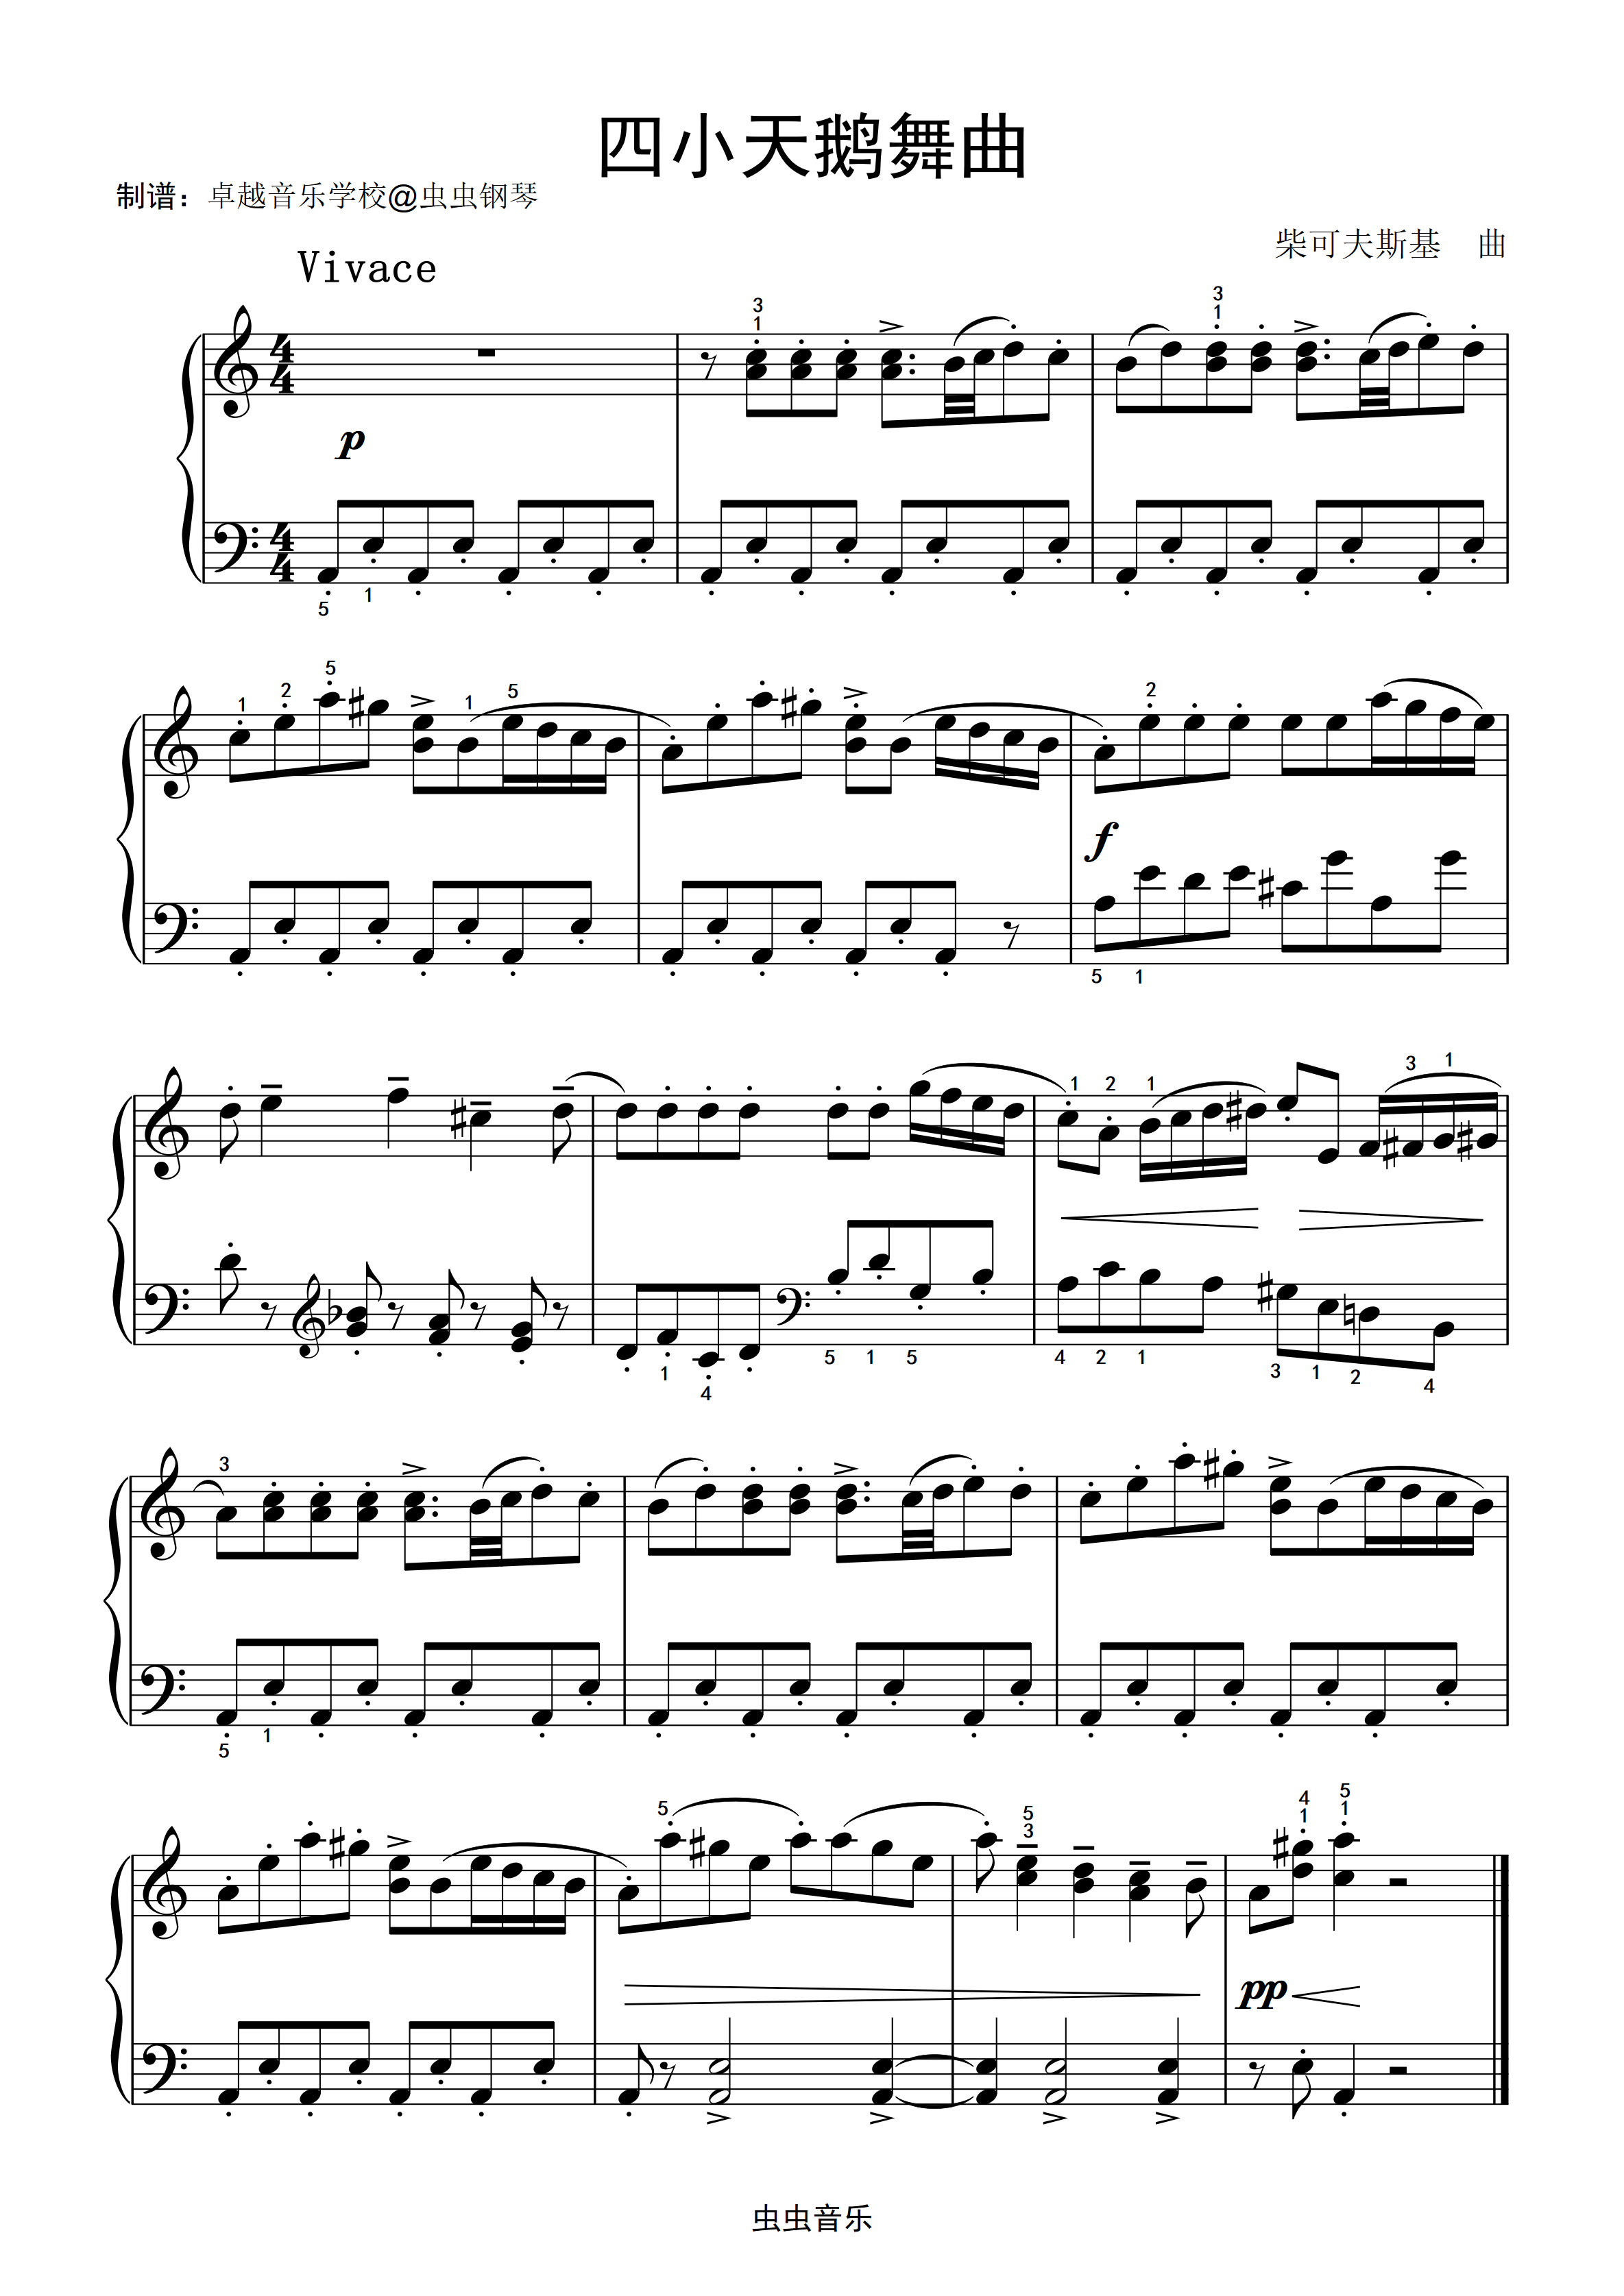 四小天鹅舞曲-钢琴谱-最全钢琴谱